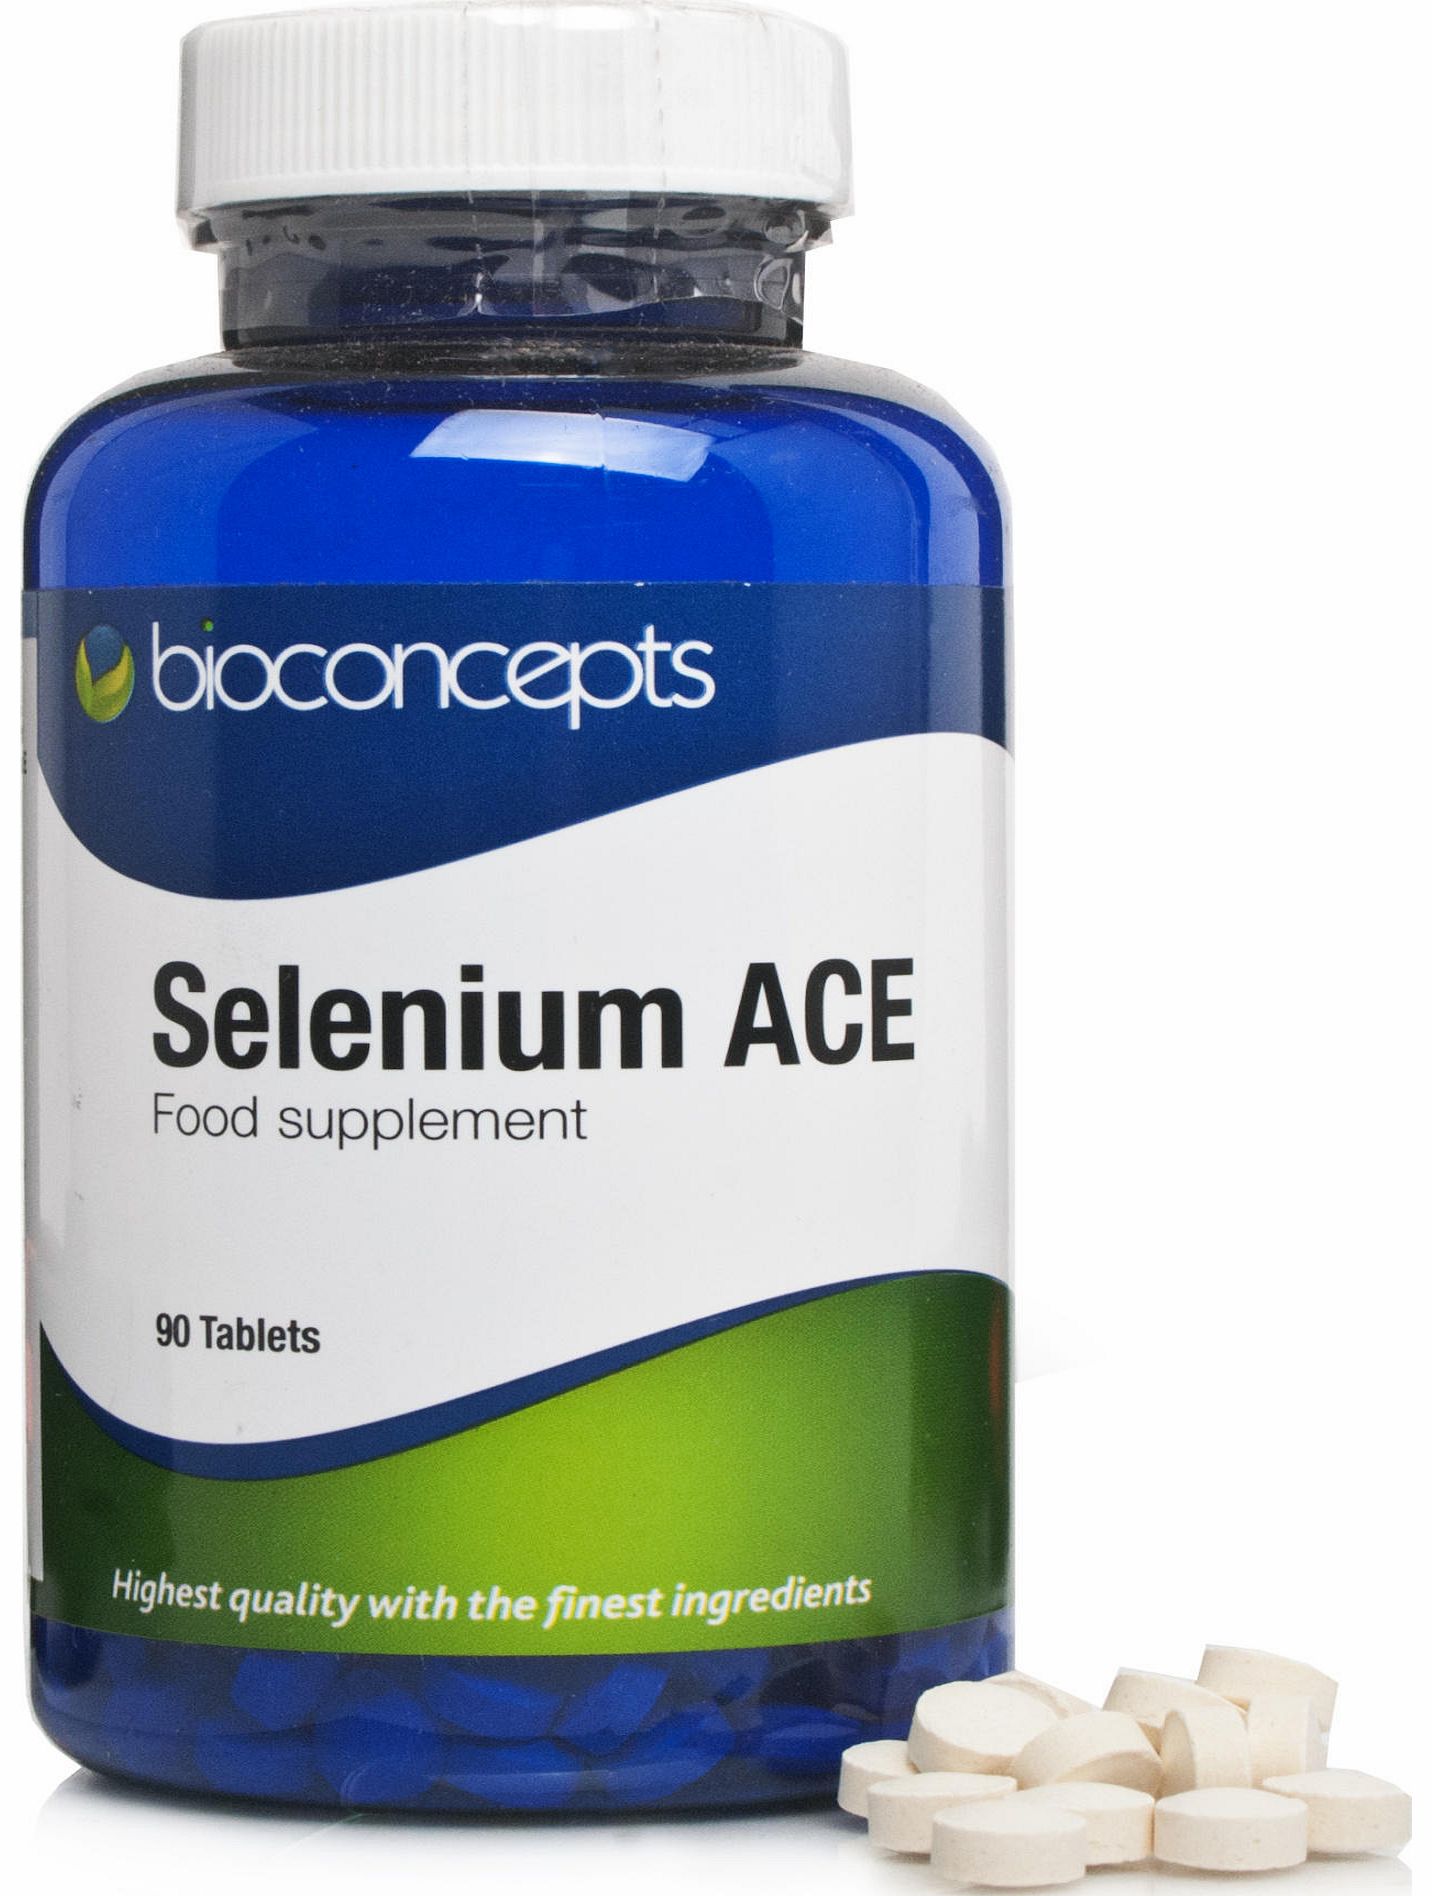 Bioconcepts Selenium ACE